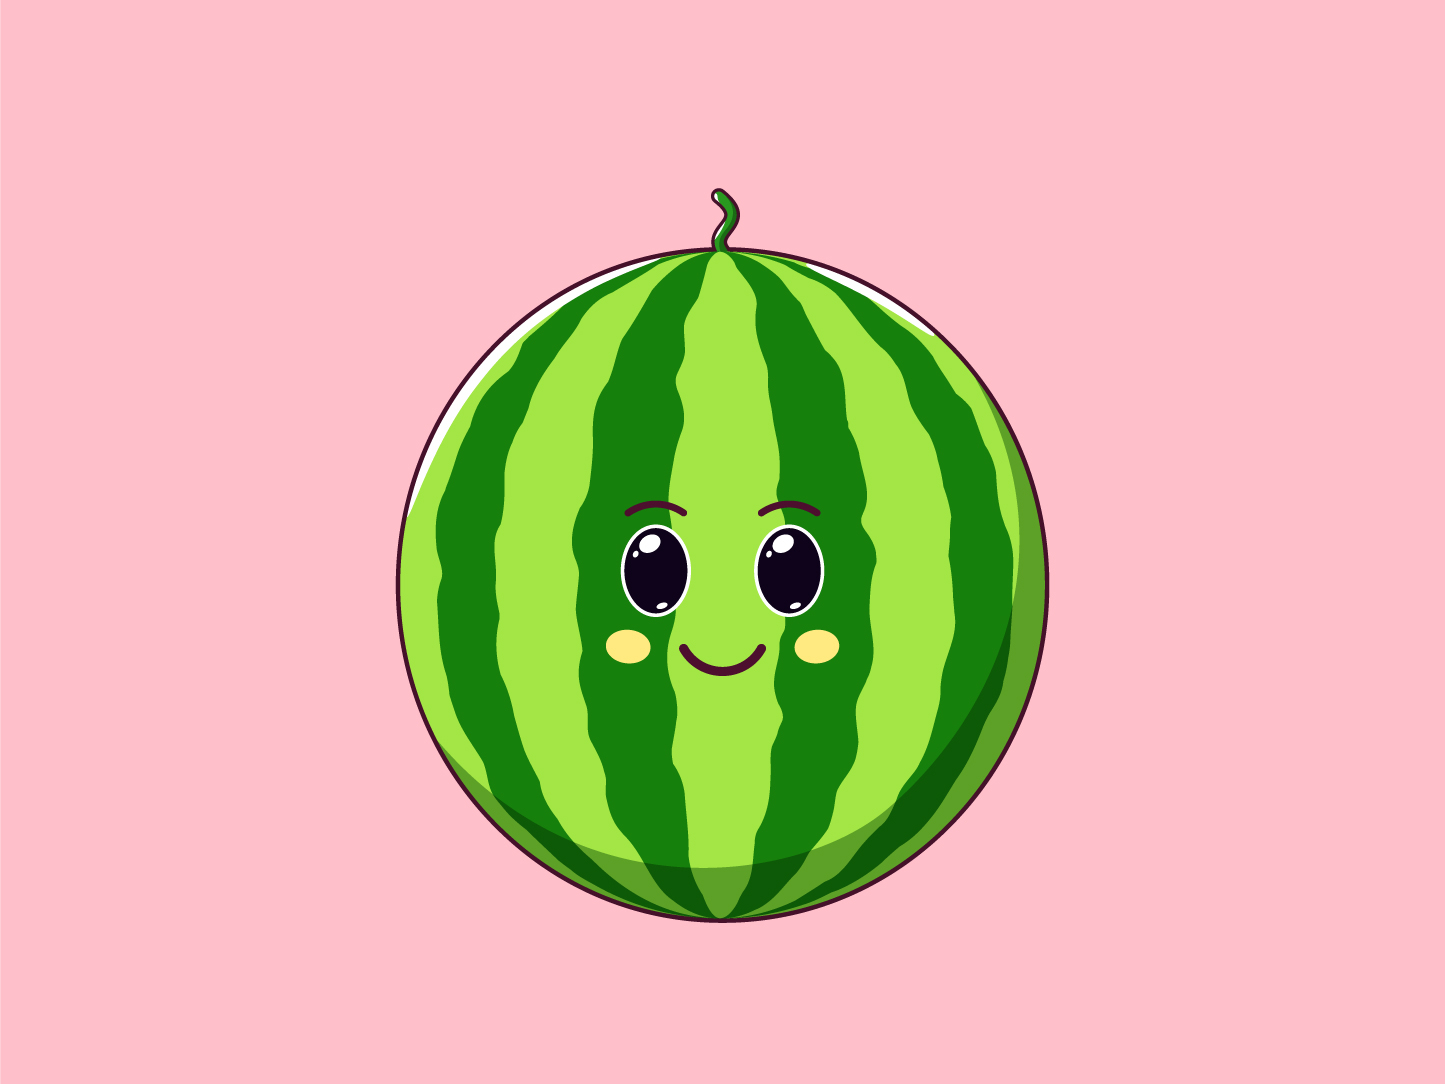 Cute Kawaii Watermelon, Cartoon Fruit by Dmitry Mayer on Dribbble